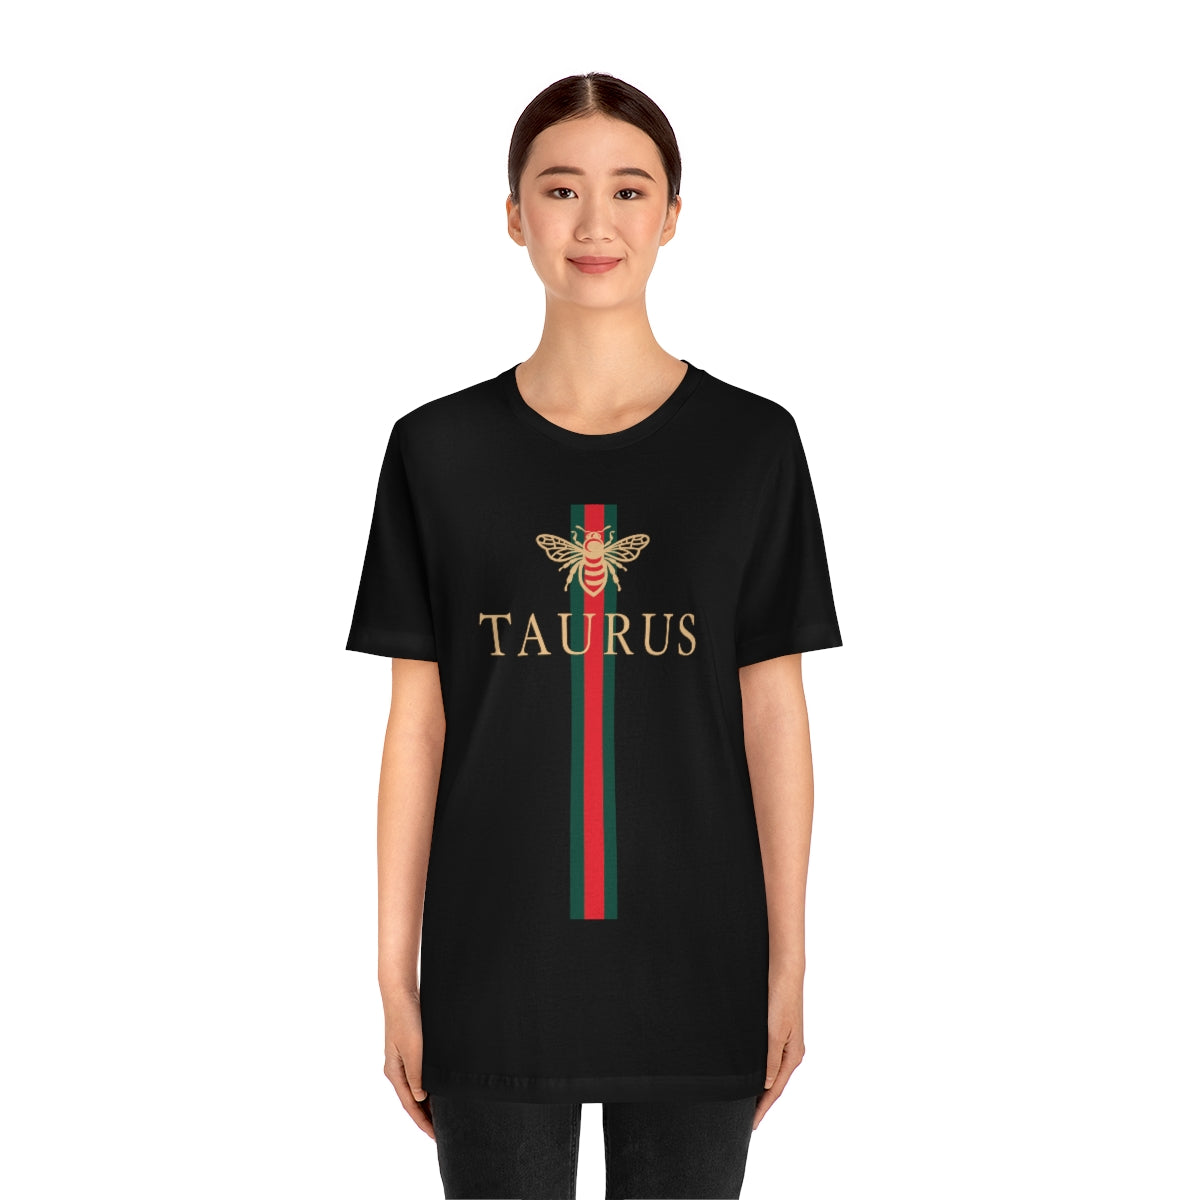 Taurus Bee Girl Shirt